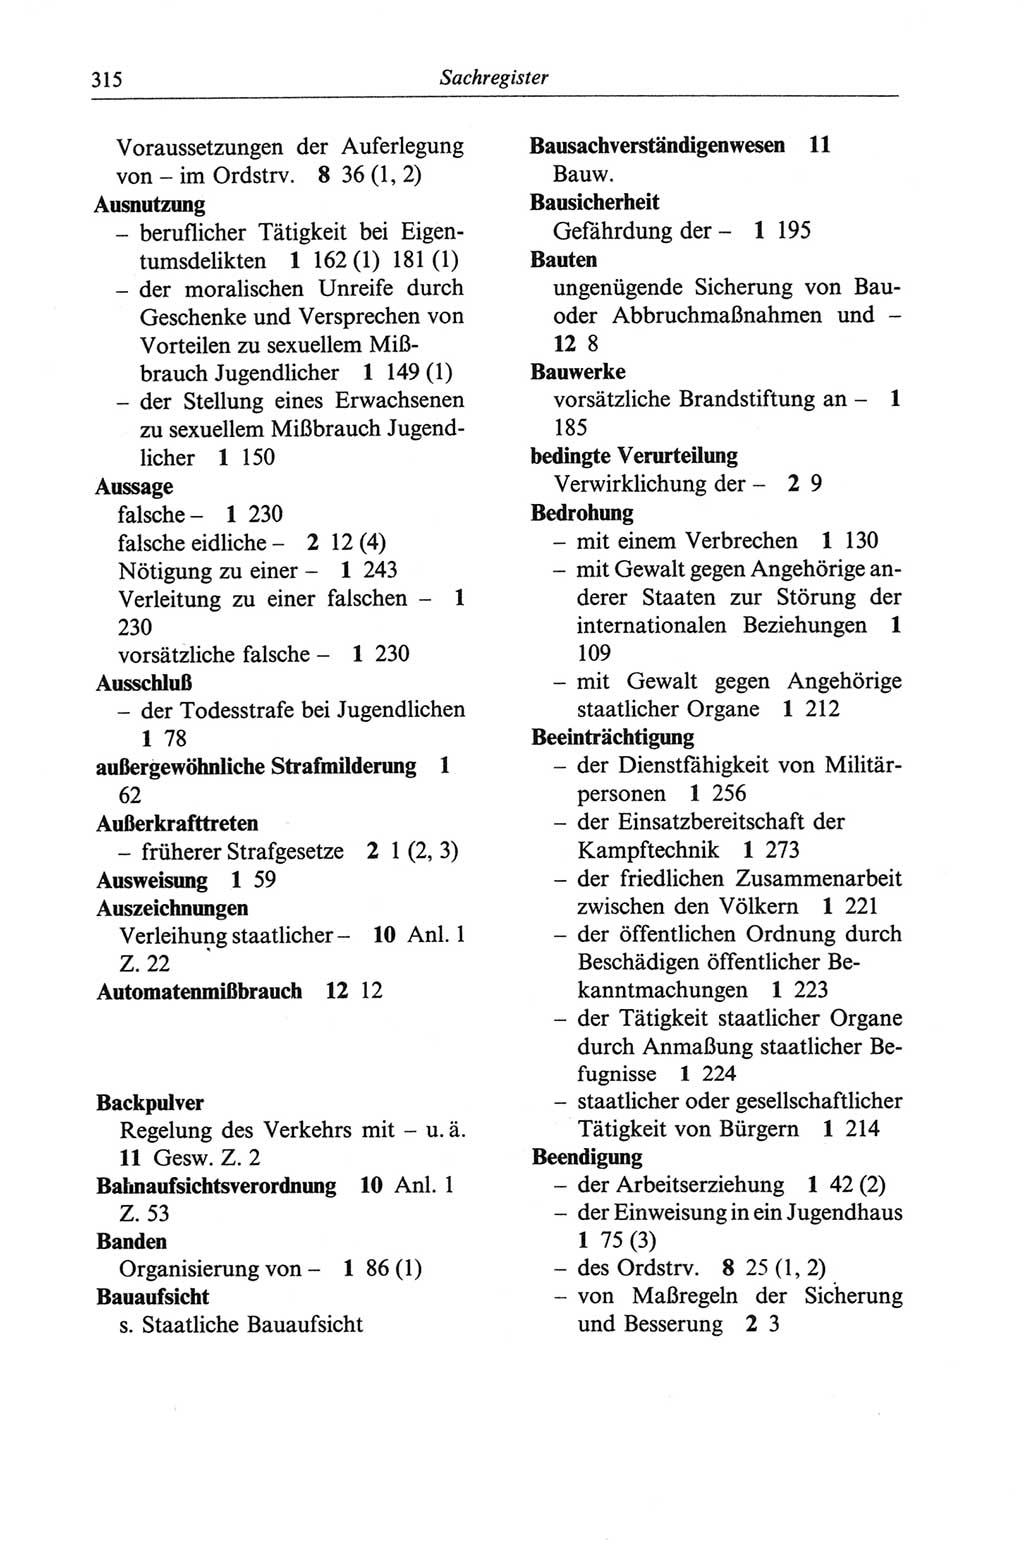 Strafgesetzbuch (StGB) der Deutschen Demokratischen Republik (DDR) und angrenzende Gesetze und Bestimmungen 1968, Seite 315 (StGB Ges. Best. DDR 1968, S. 315)